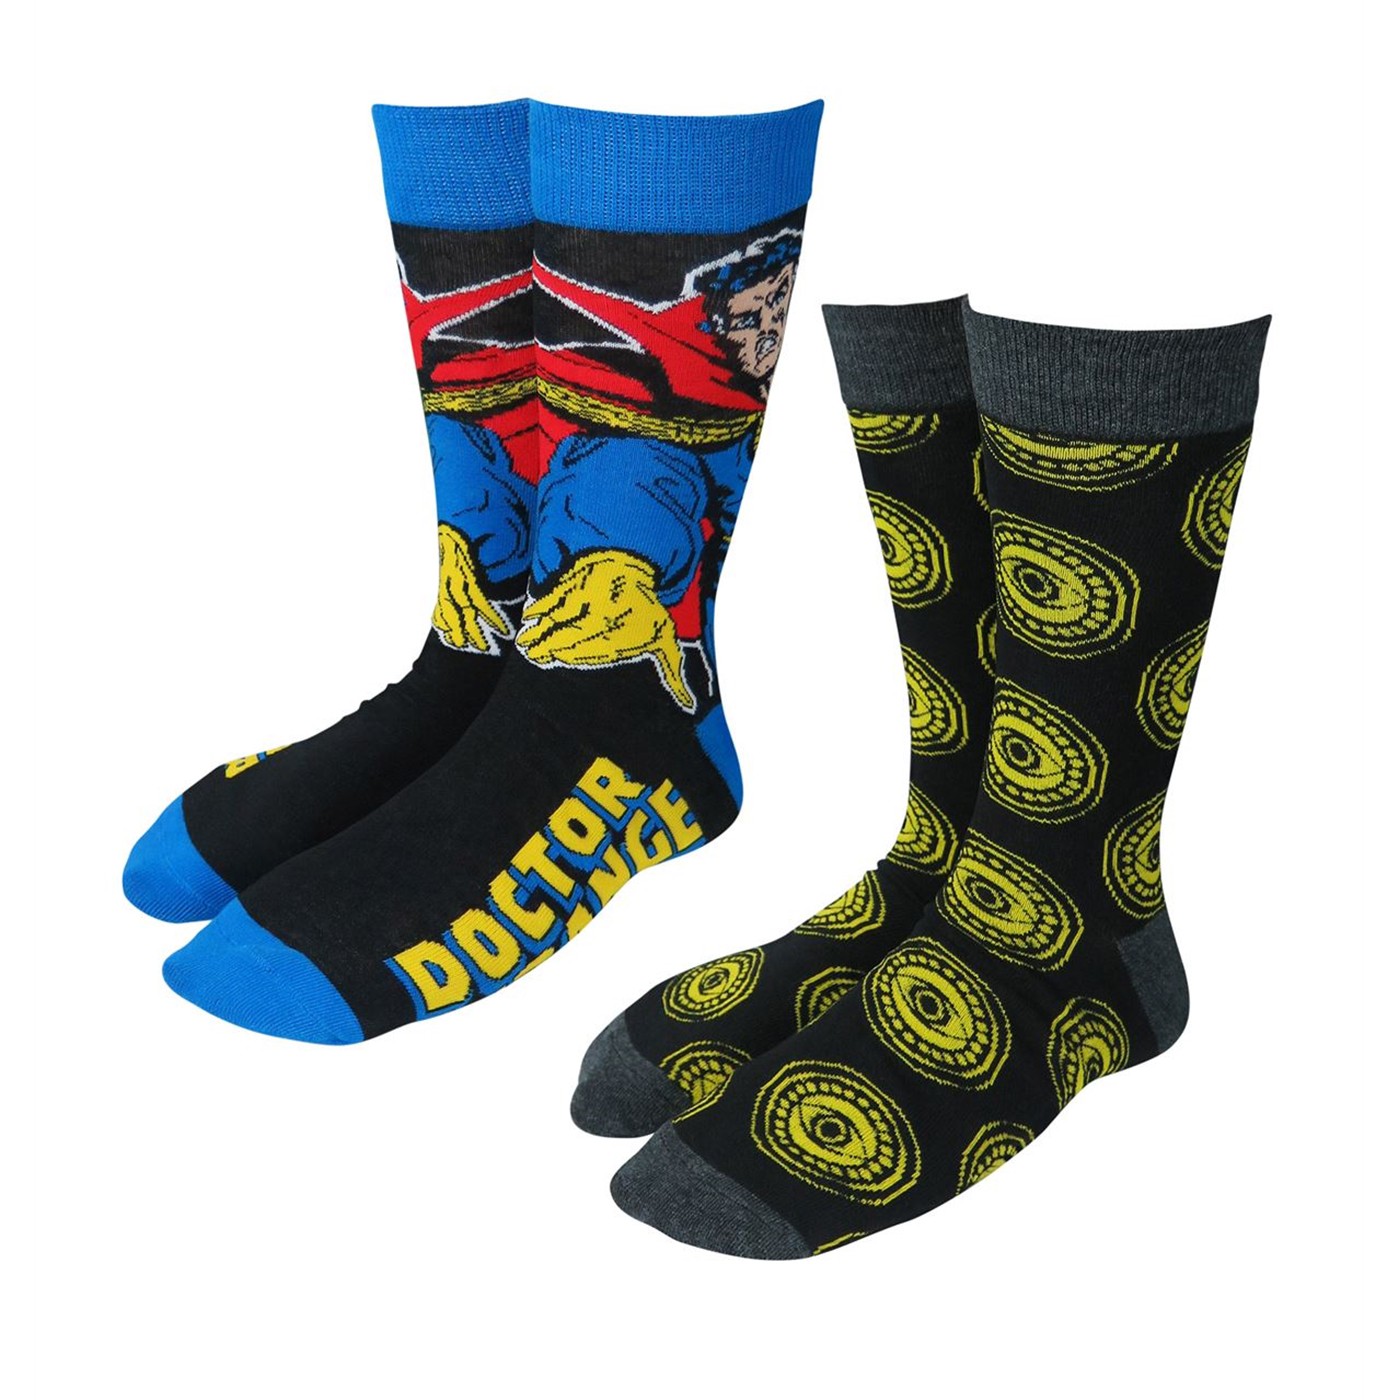 Dr. Strange Crew Socks 2-Pack